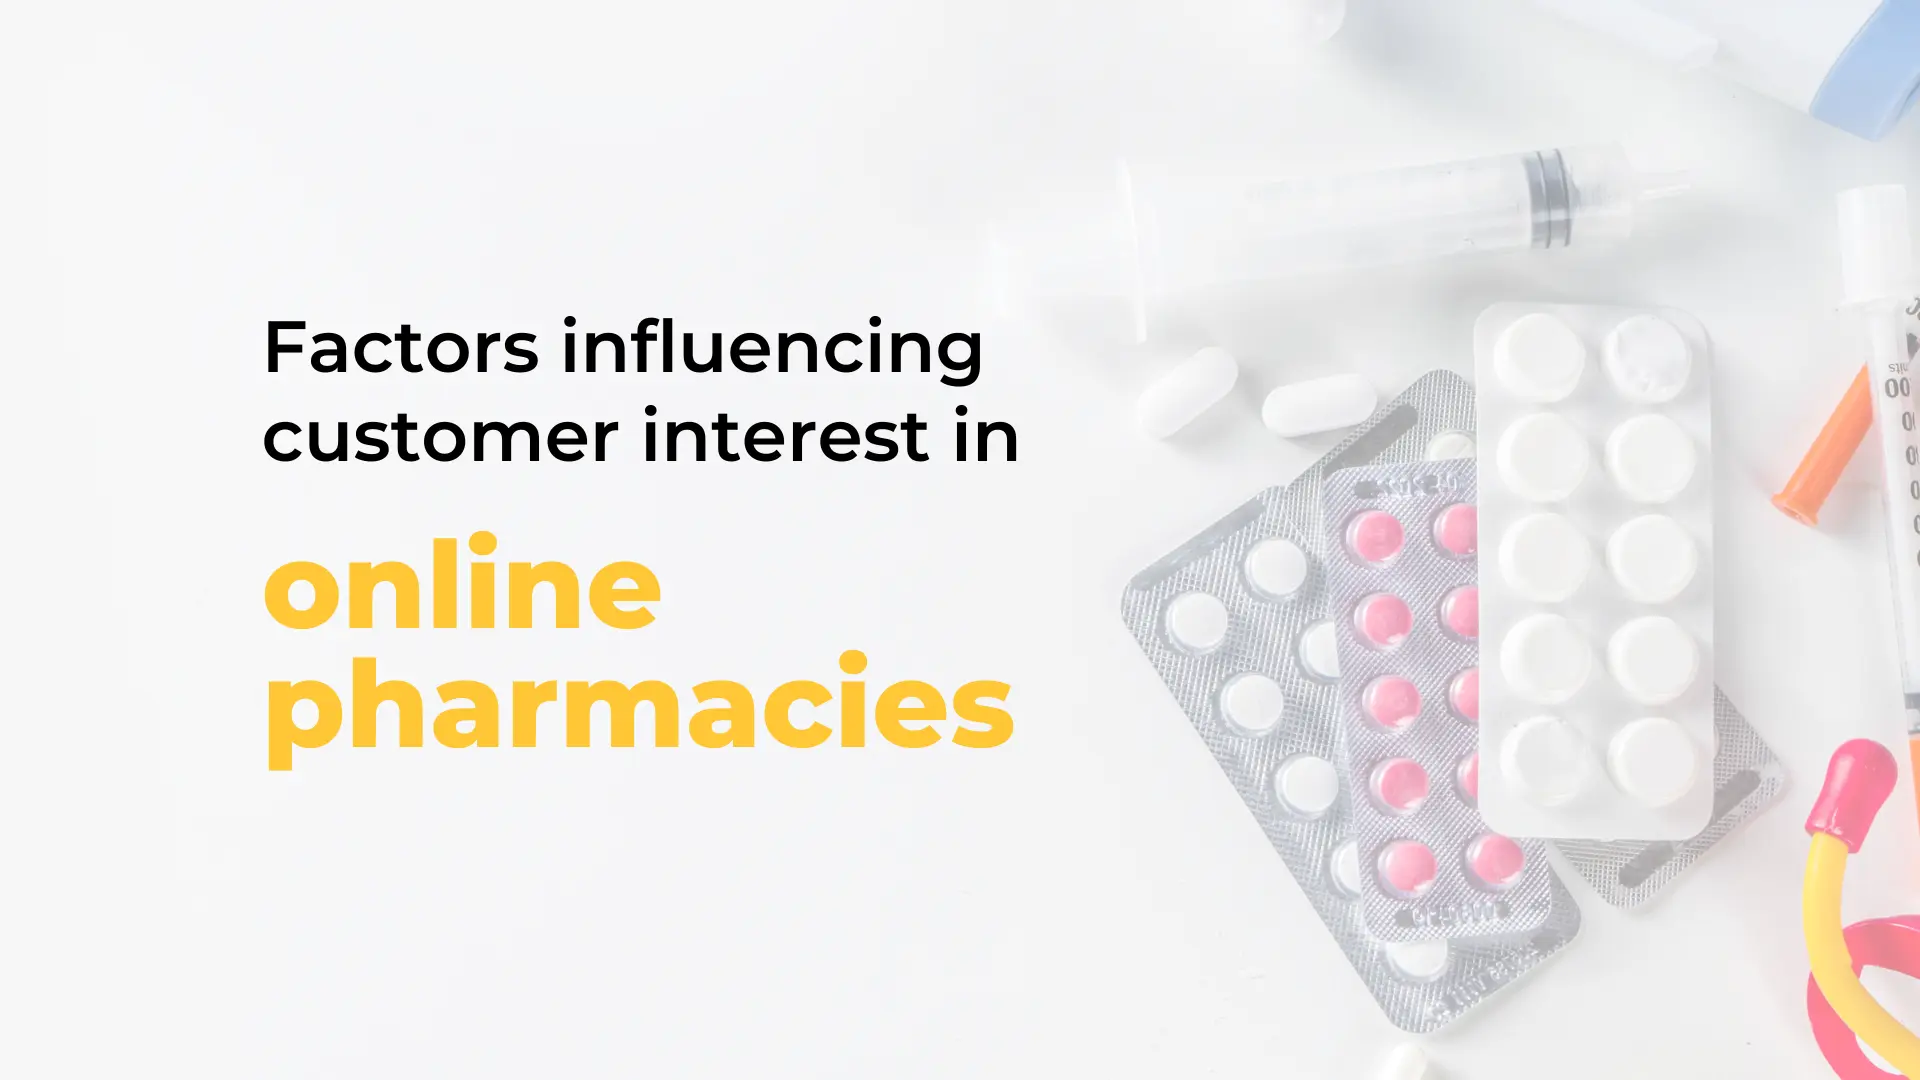 Factors influencing customer interest in online pharmacies